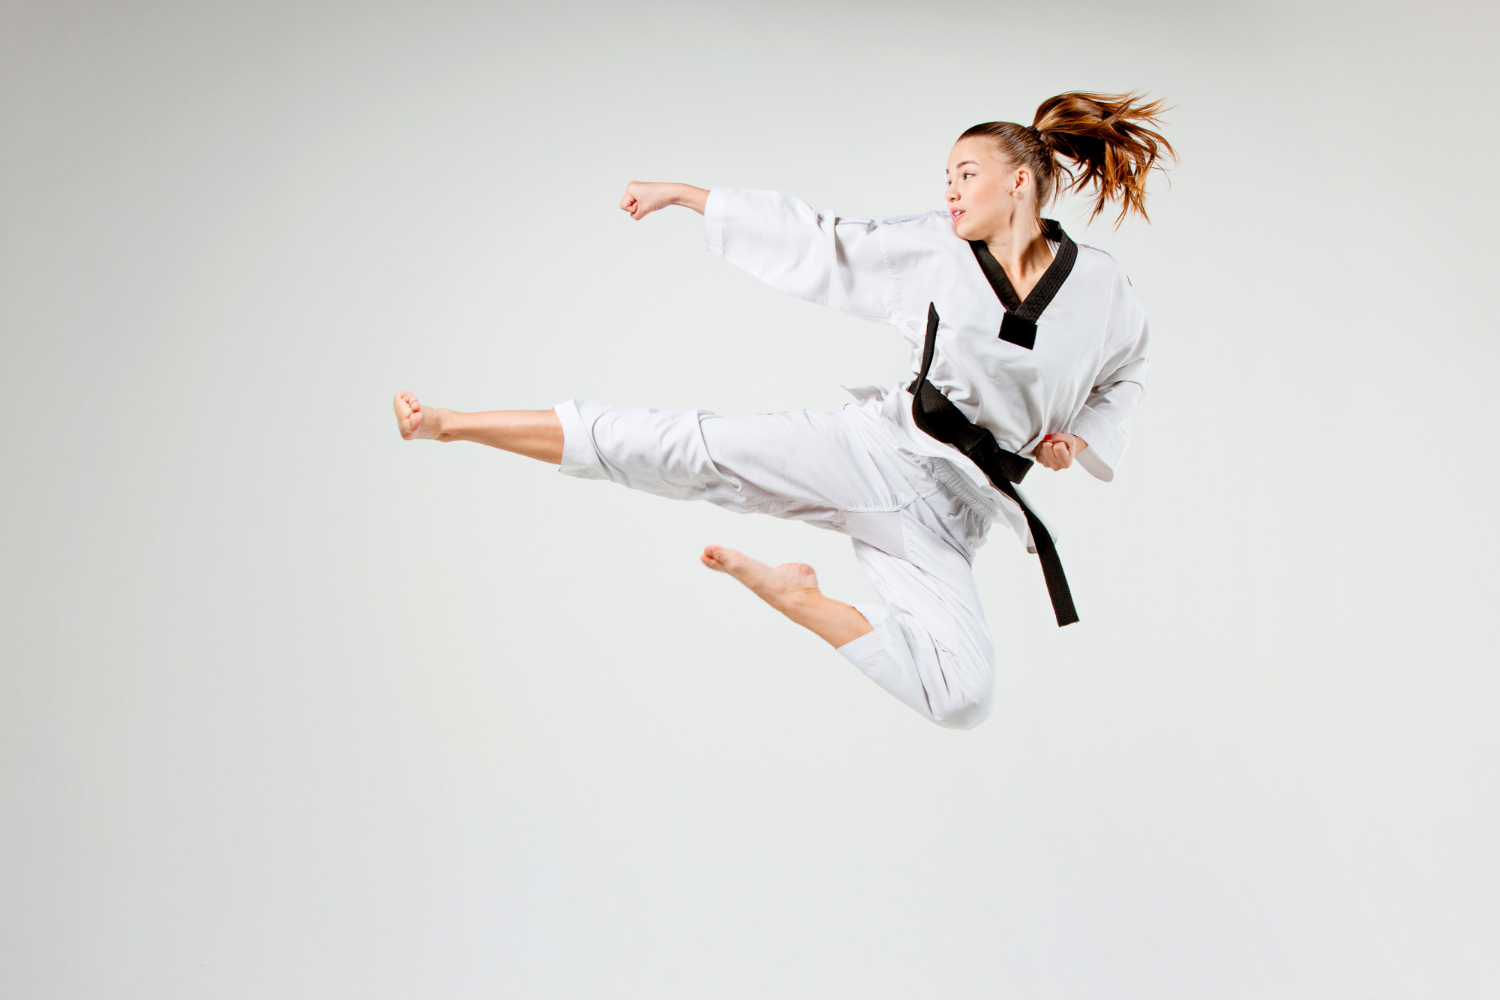 De wereld van Karate